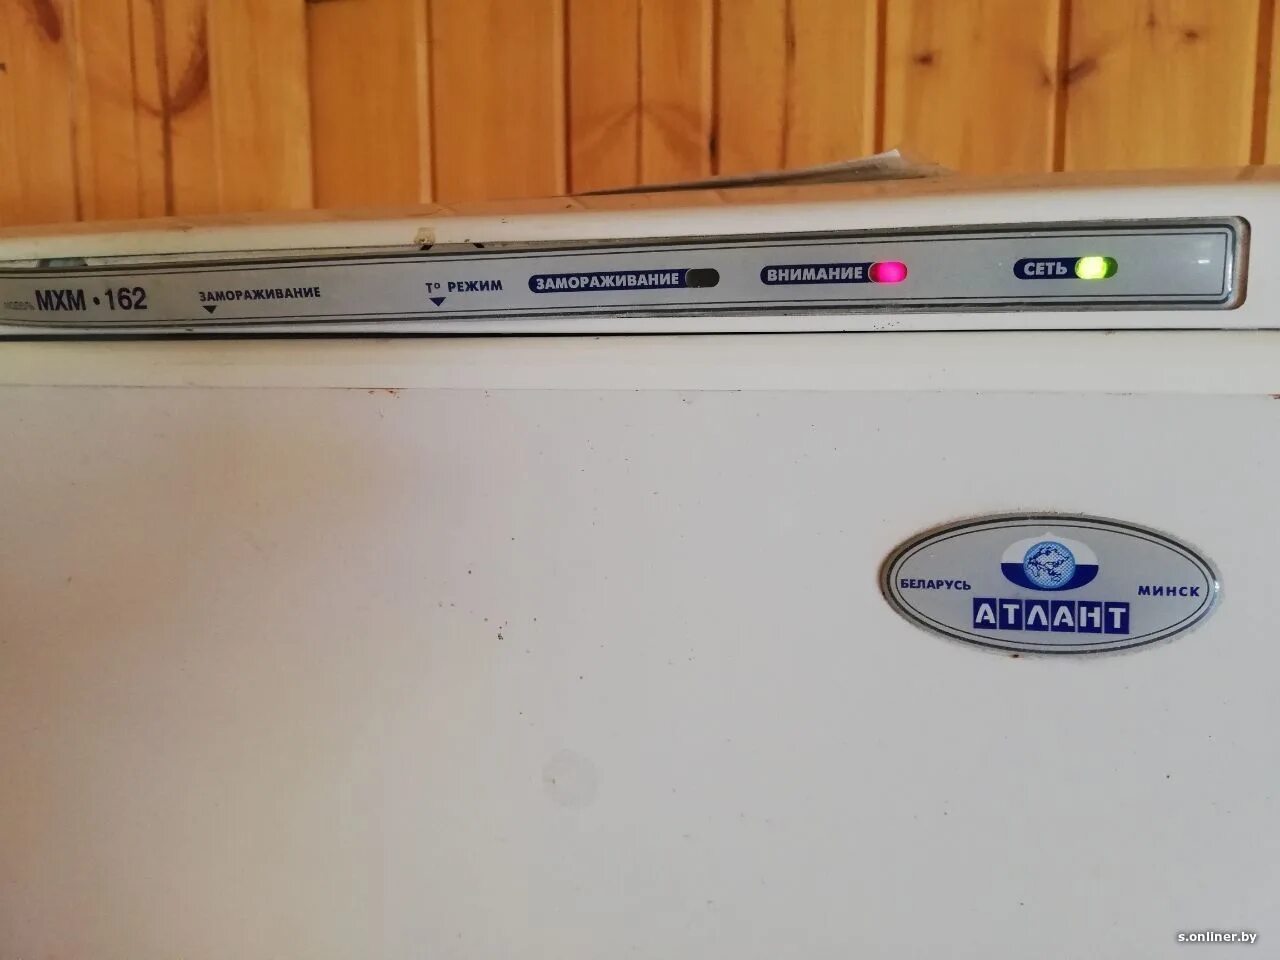 Холодильник Атлант двухкамерный 4410 индикаторы. Холодильник Атлант 2 Compressors индикаторы на панели. Панель управления холодильника Атлант 2 компрессора. Атлант холодильник 2 компрессора панель индикаторов. Атлант холодильник двухкамерный внимание